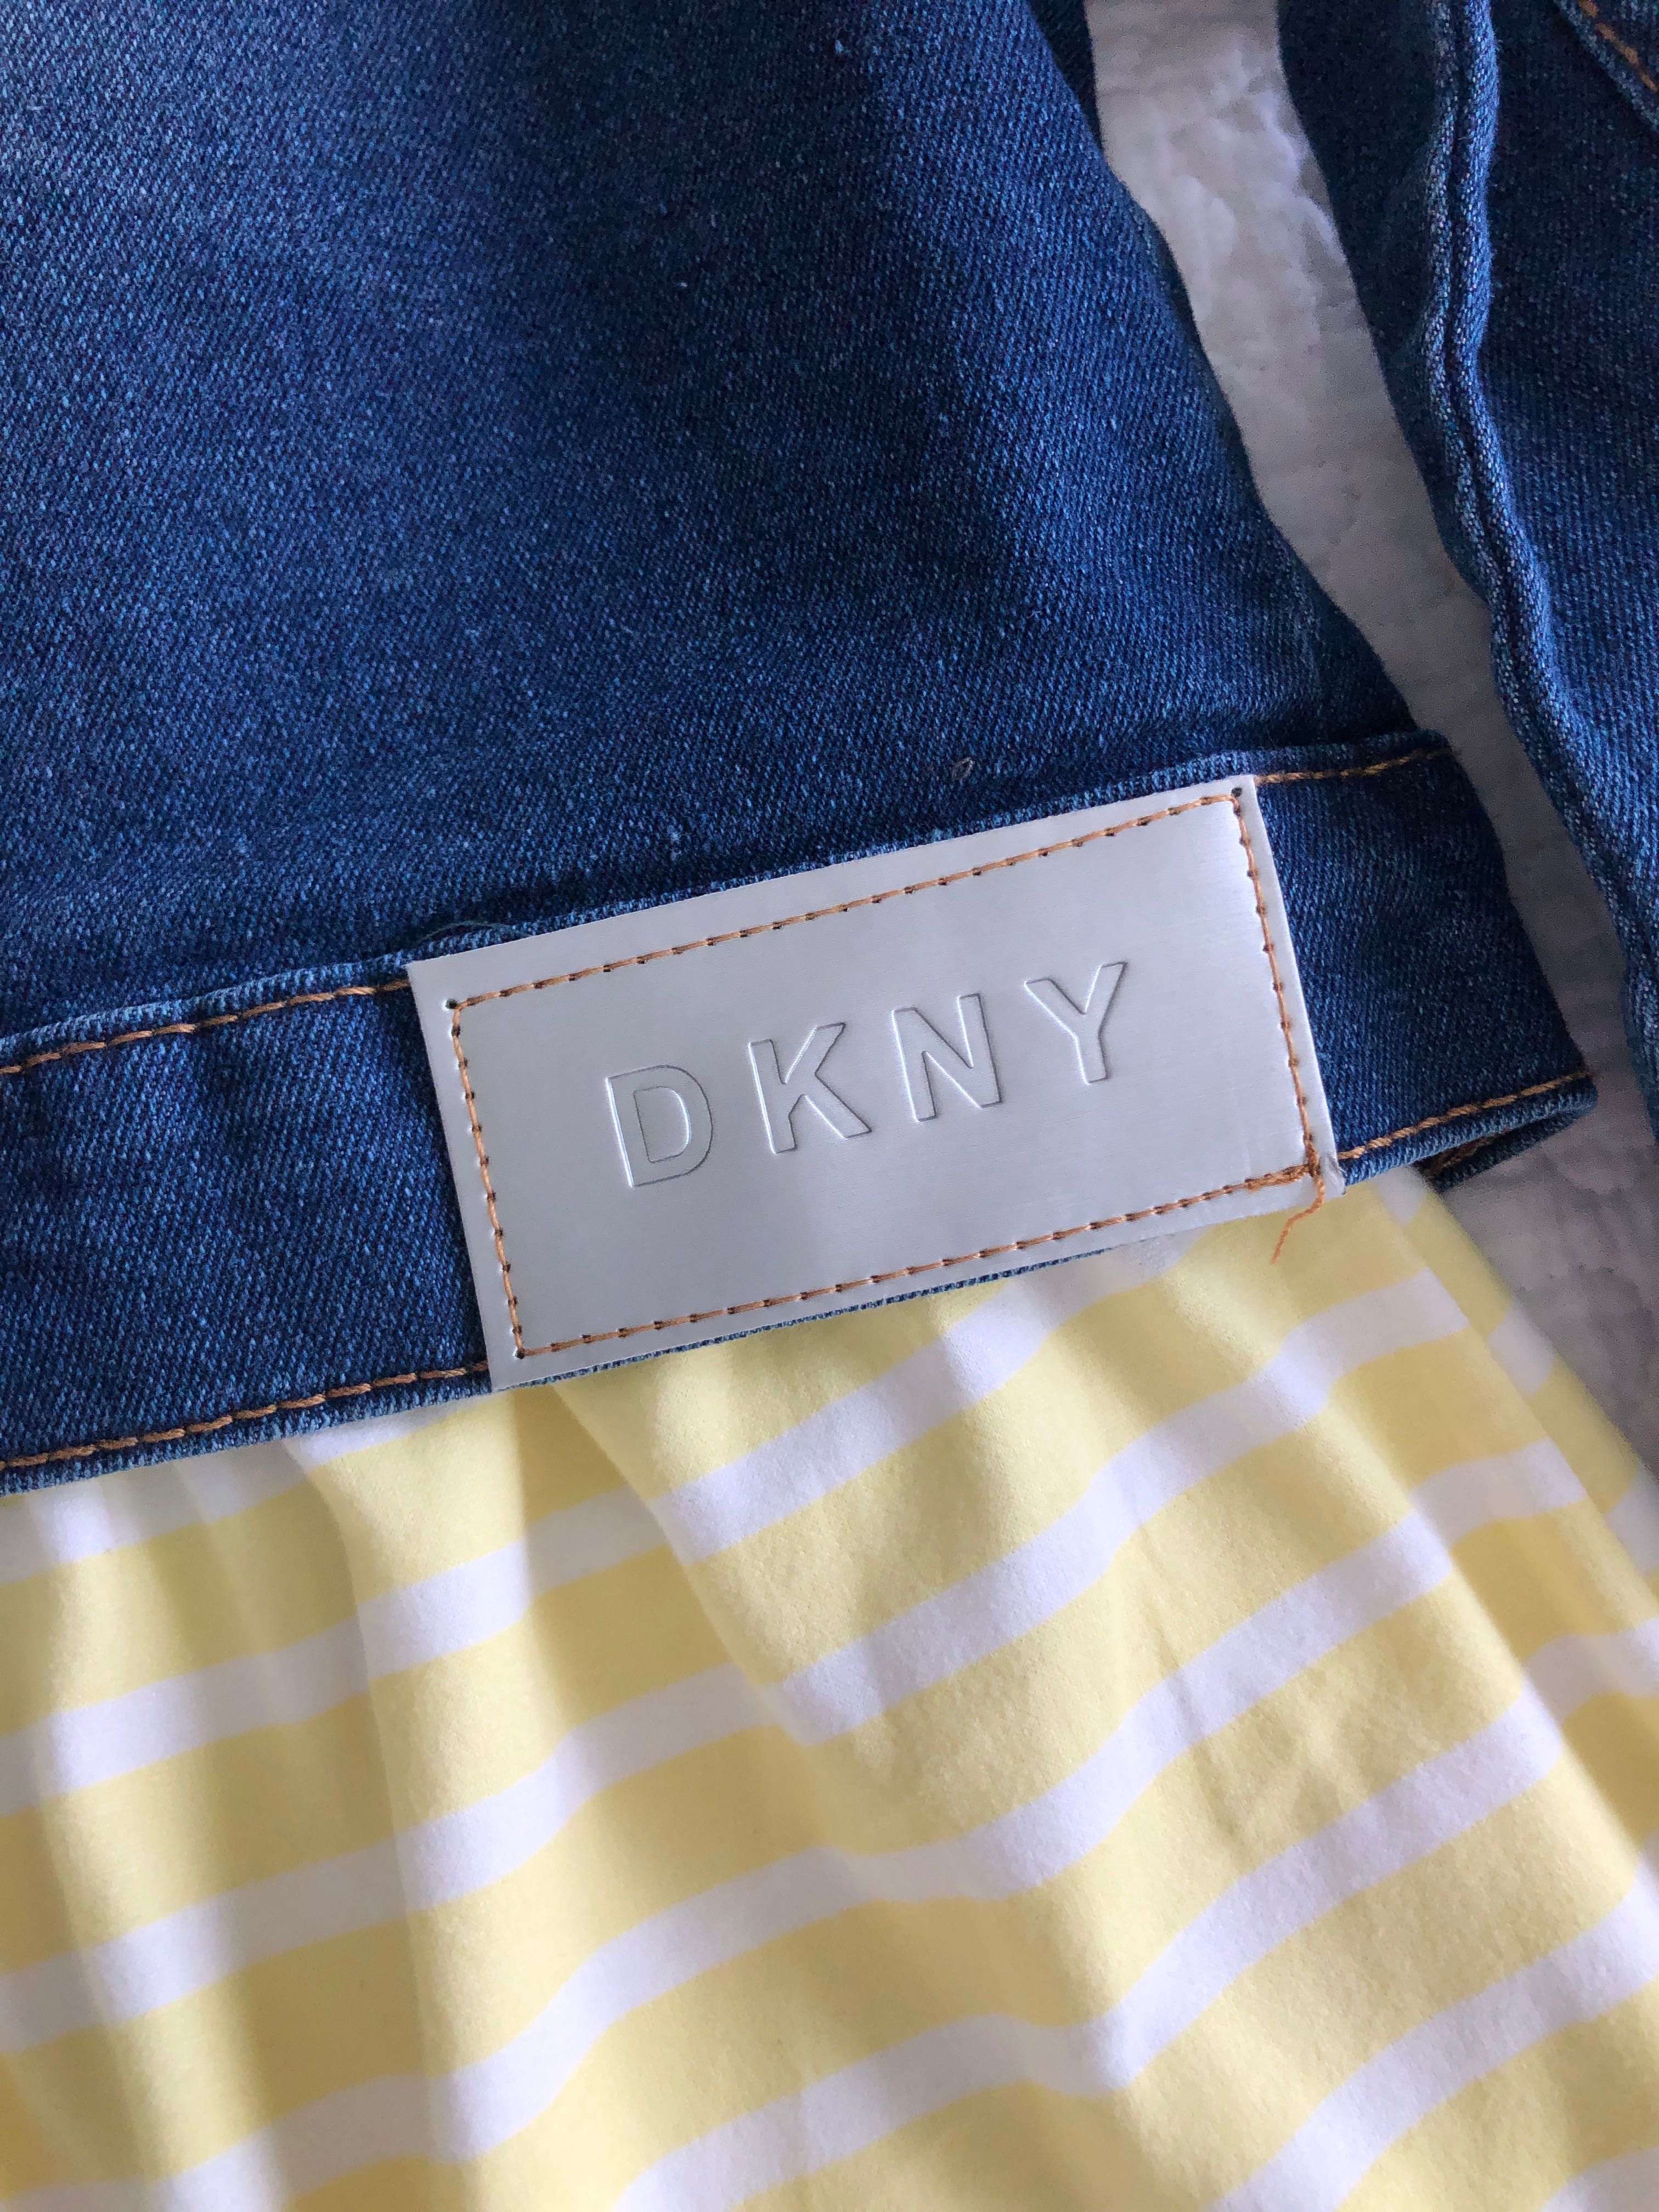 DKNY komplet sukienka + katanka na 4 latka